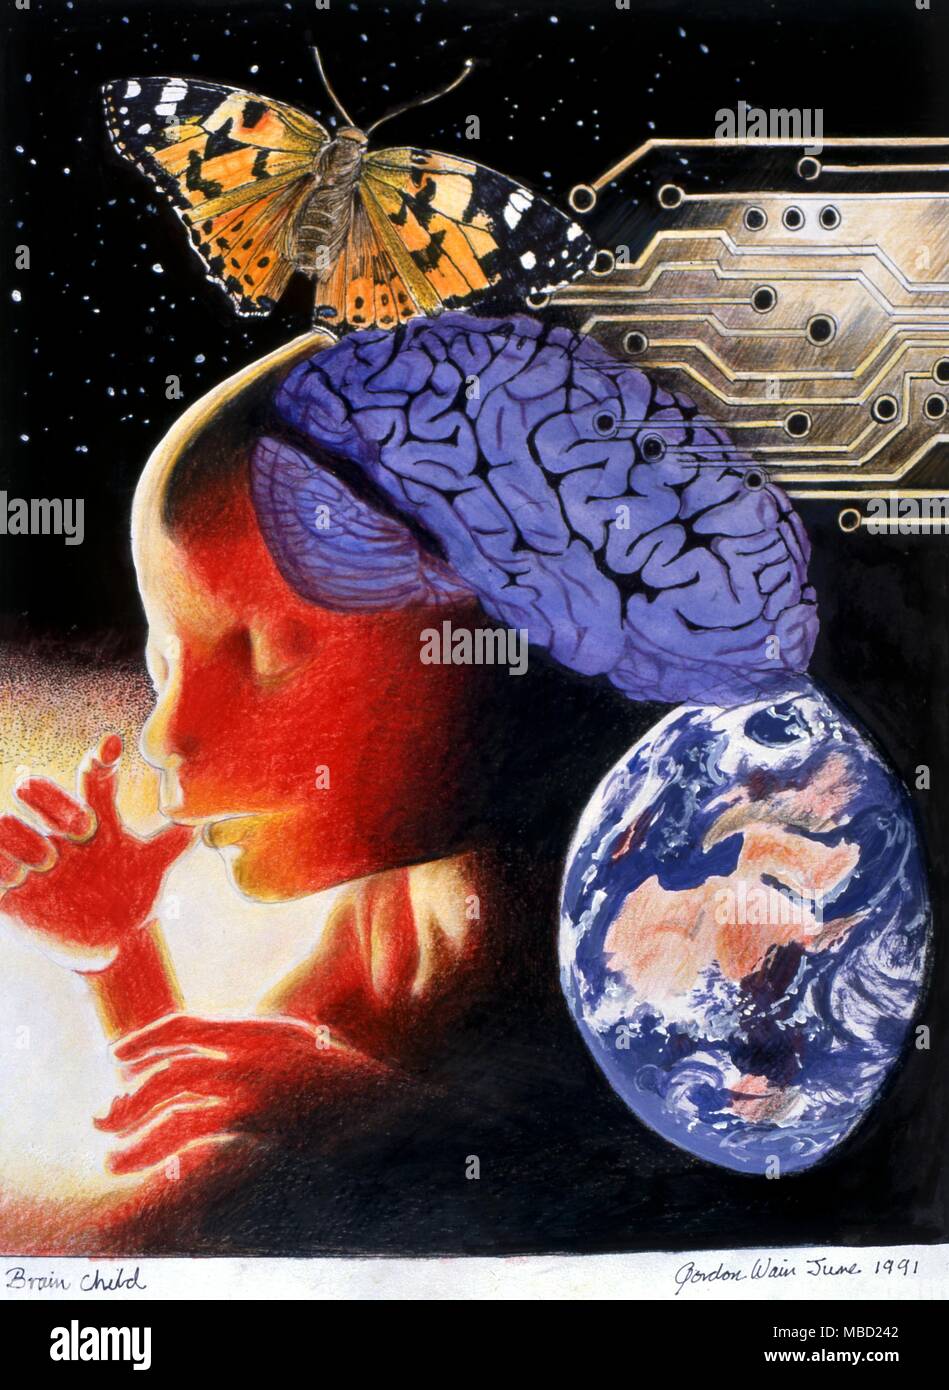 Okkulte Kunst Malerei" Gehirn Kind' von Gordon Wain, 1991. Die mystische Verbindung zwischen Masse und dem Gehirn, zwischen Embryo und Schmetterling. Das Gehirn ist das Zentrum einer mystischen Alchemie, die Dinge der Erde mit den Dingen des Geistes, der Psyche (Schmetterling). In der gegenwärtigen Phase der Entwicklung, der Mensch ist nur in der Konzeption, noch nicht geboren. Stockfoto